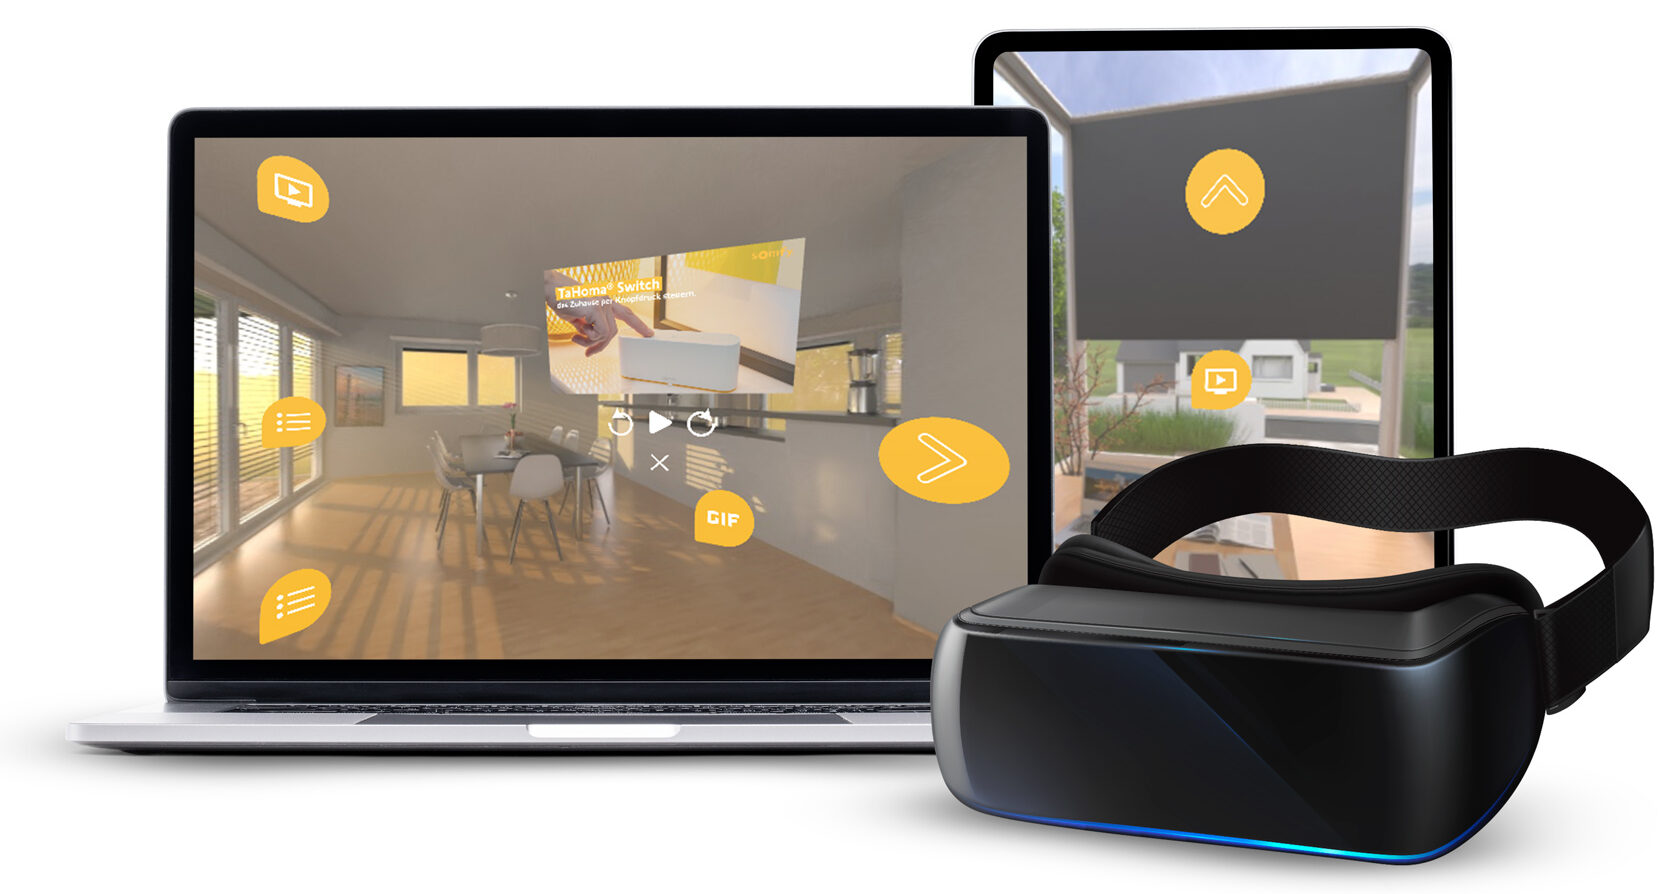 360 Grad Video Agentur erstellt, bearbeitet und vermarktet Videos für VR Brillen, Handys und alle Player. VR Marketing mit 360 Grad Videos.